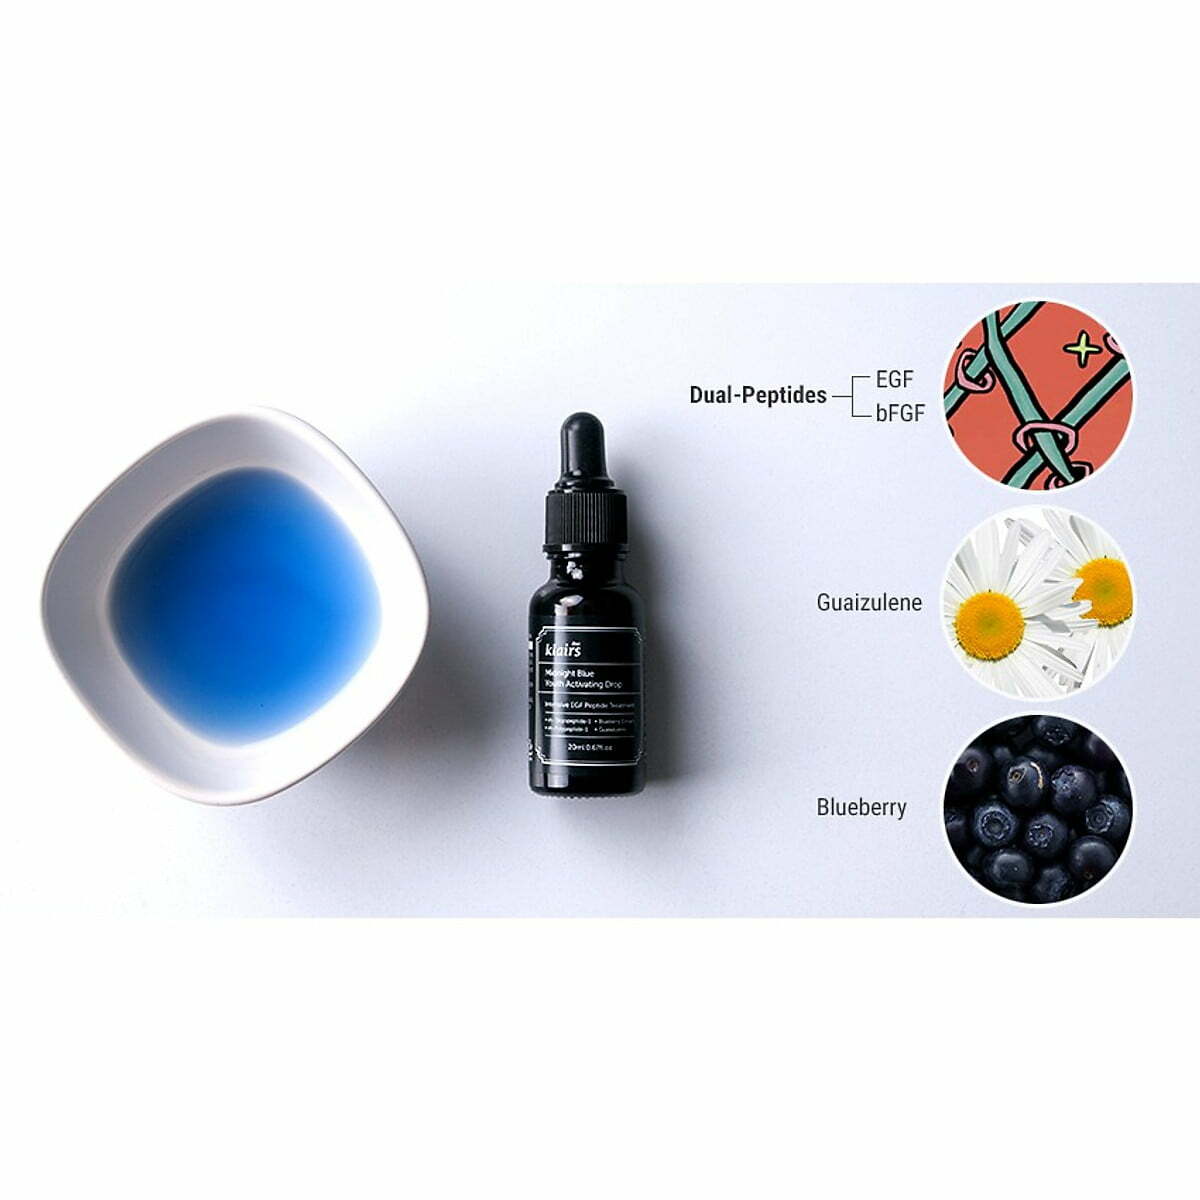 Màu xanh độc quyền của Klairs Midnight Blue là điểm đặc biệt nhất của dòng serum phục hồi da sau điều trị mụn này.